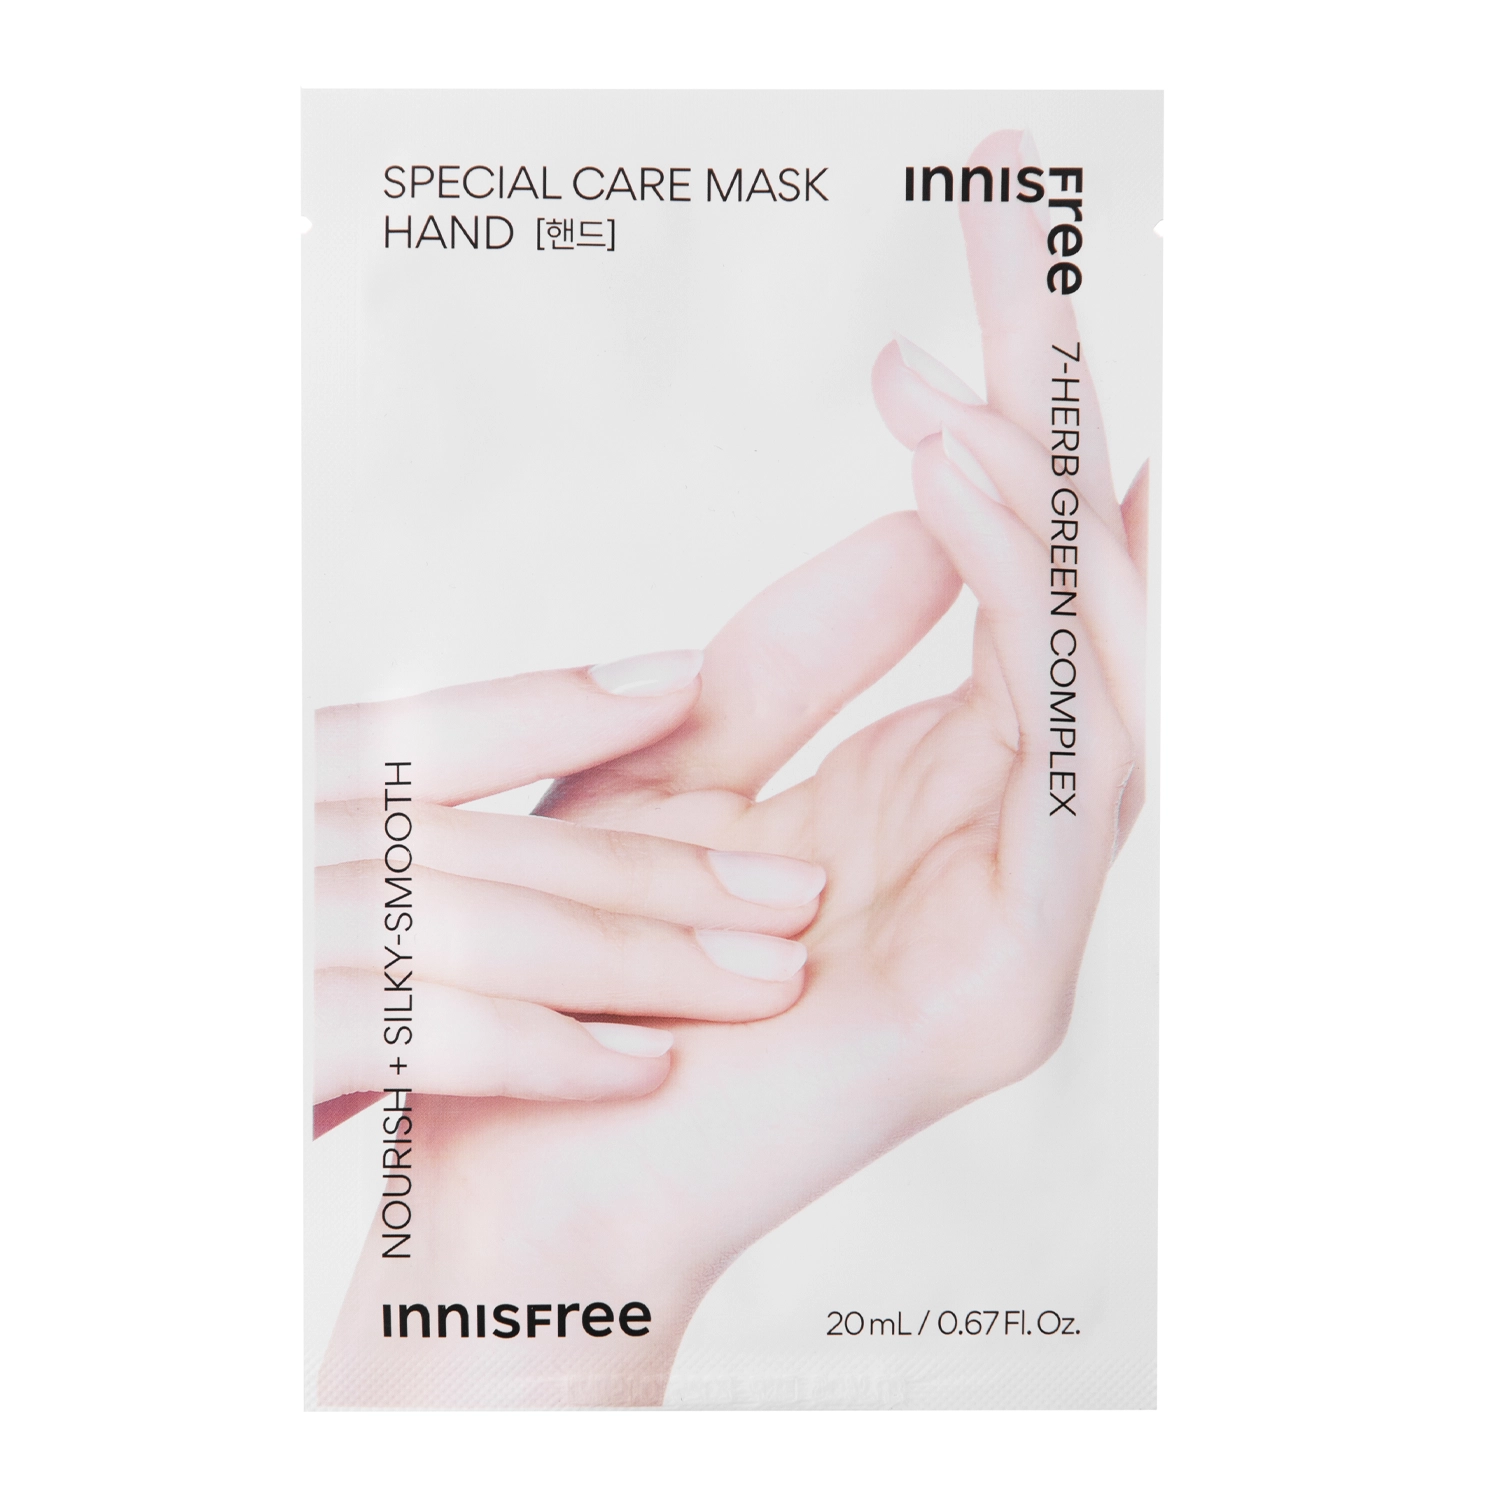 Innisfree - Special Care Hand Mask - Feuchtigkeitsspendende Handmaske - 20ml